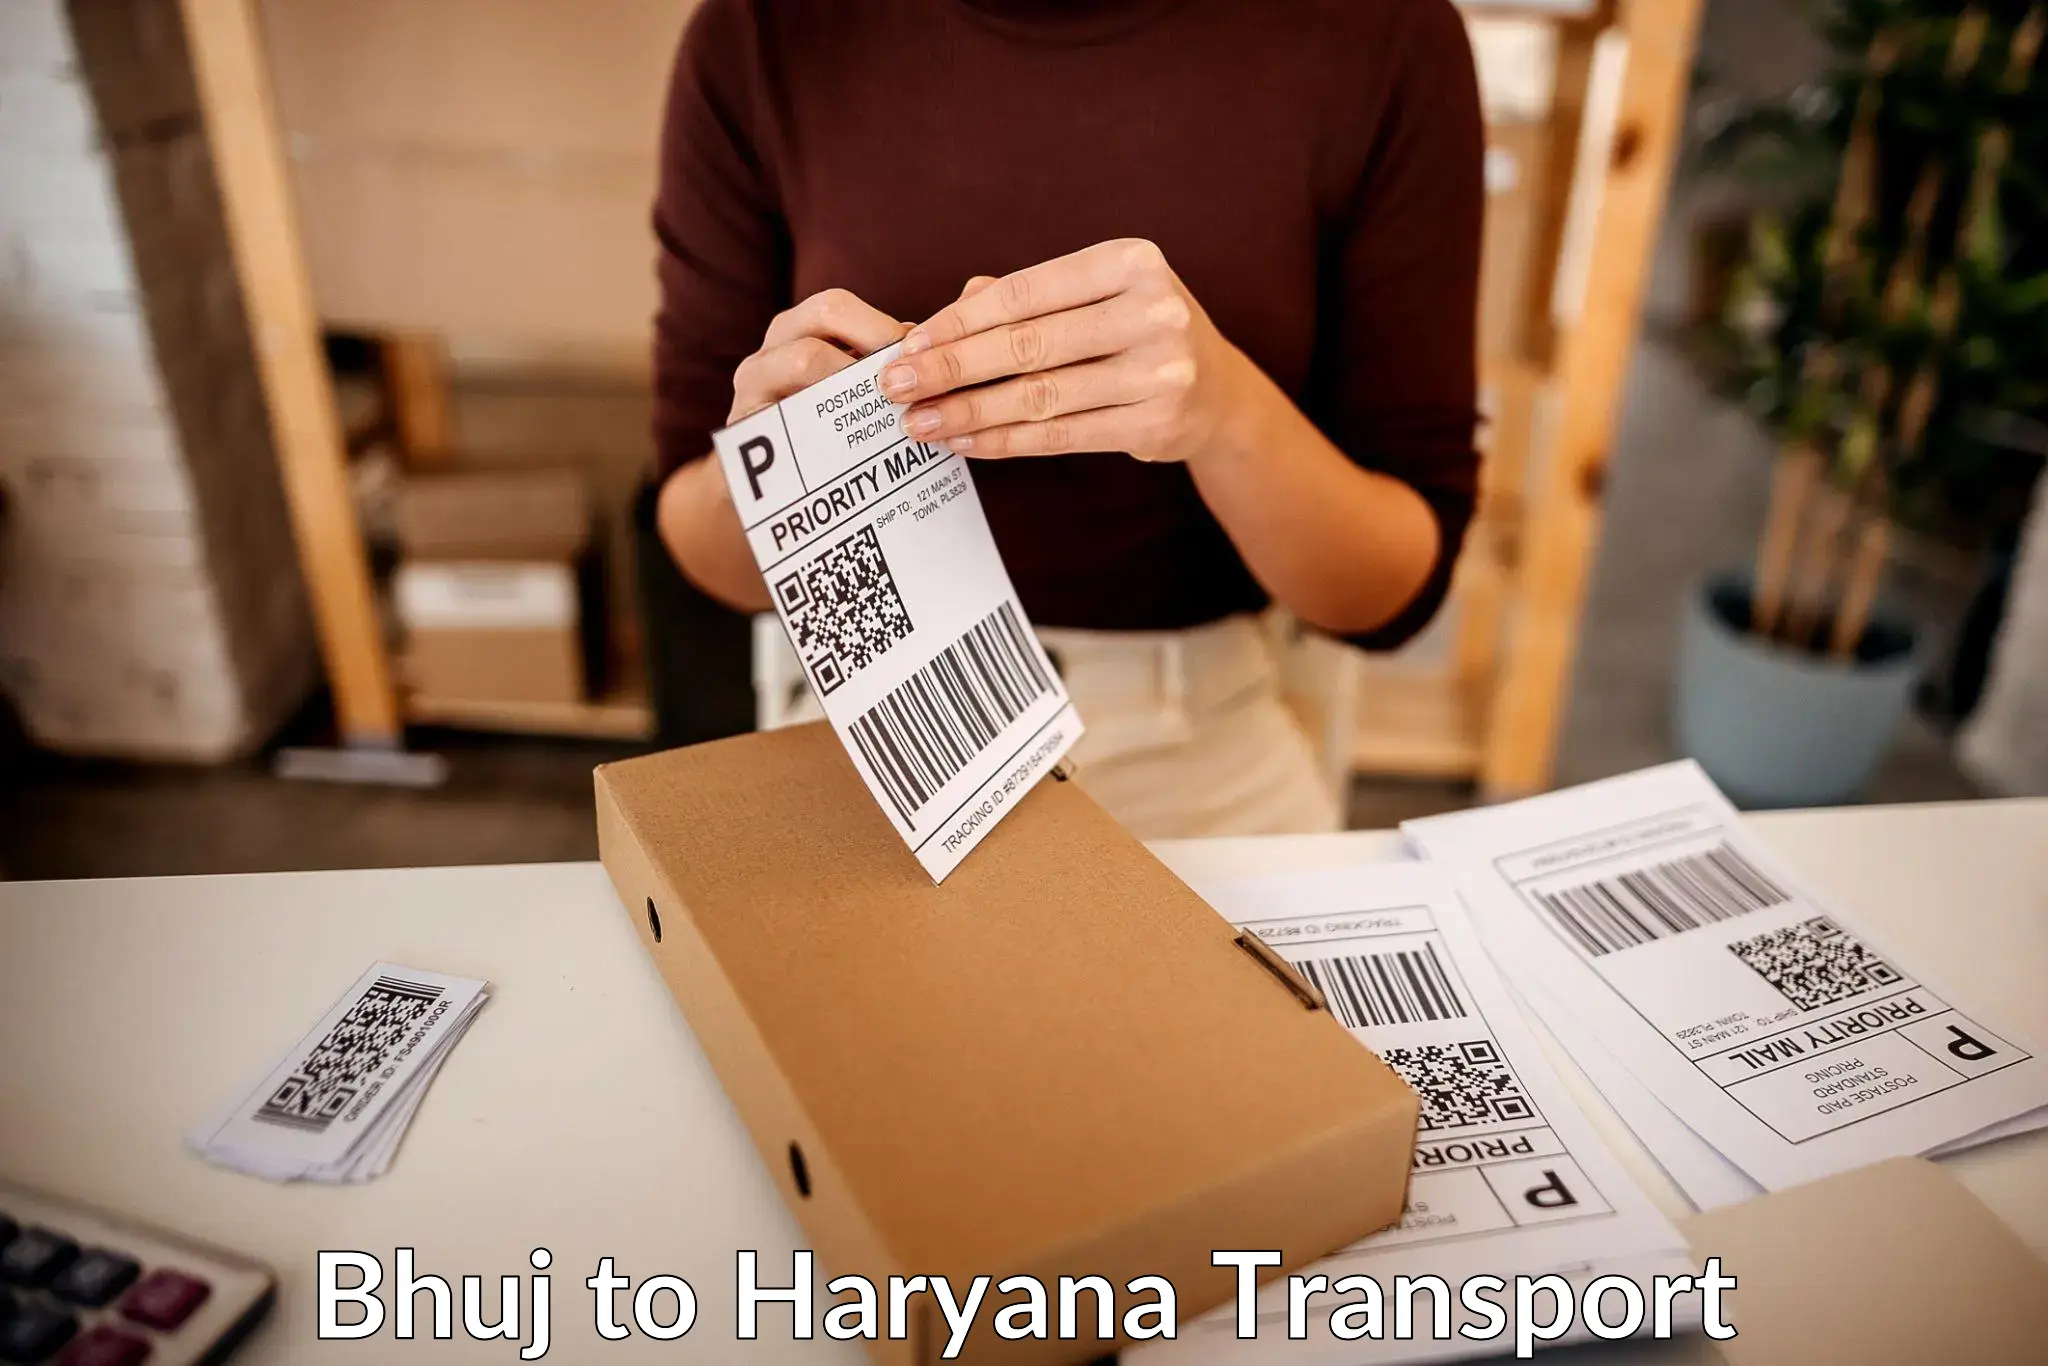 Shipping partner Bhuj to Rewari